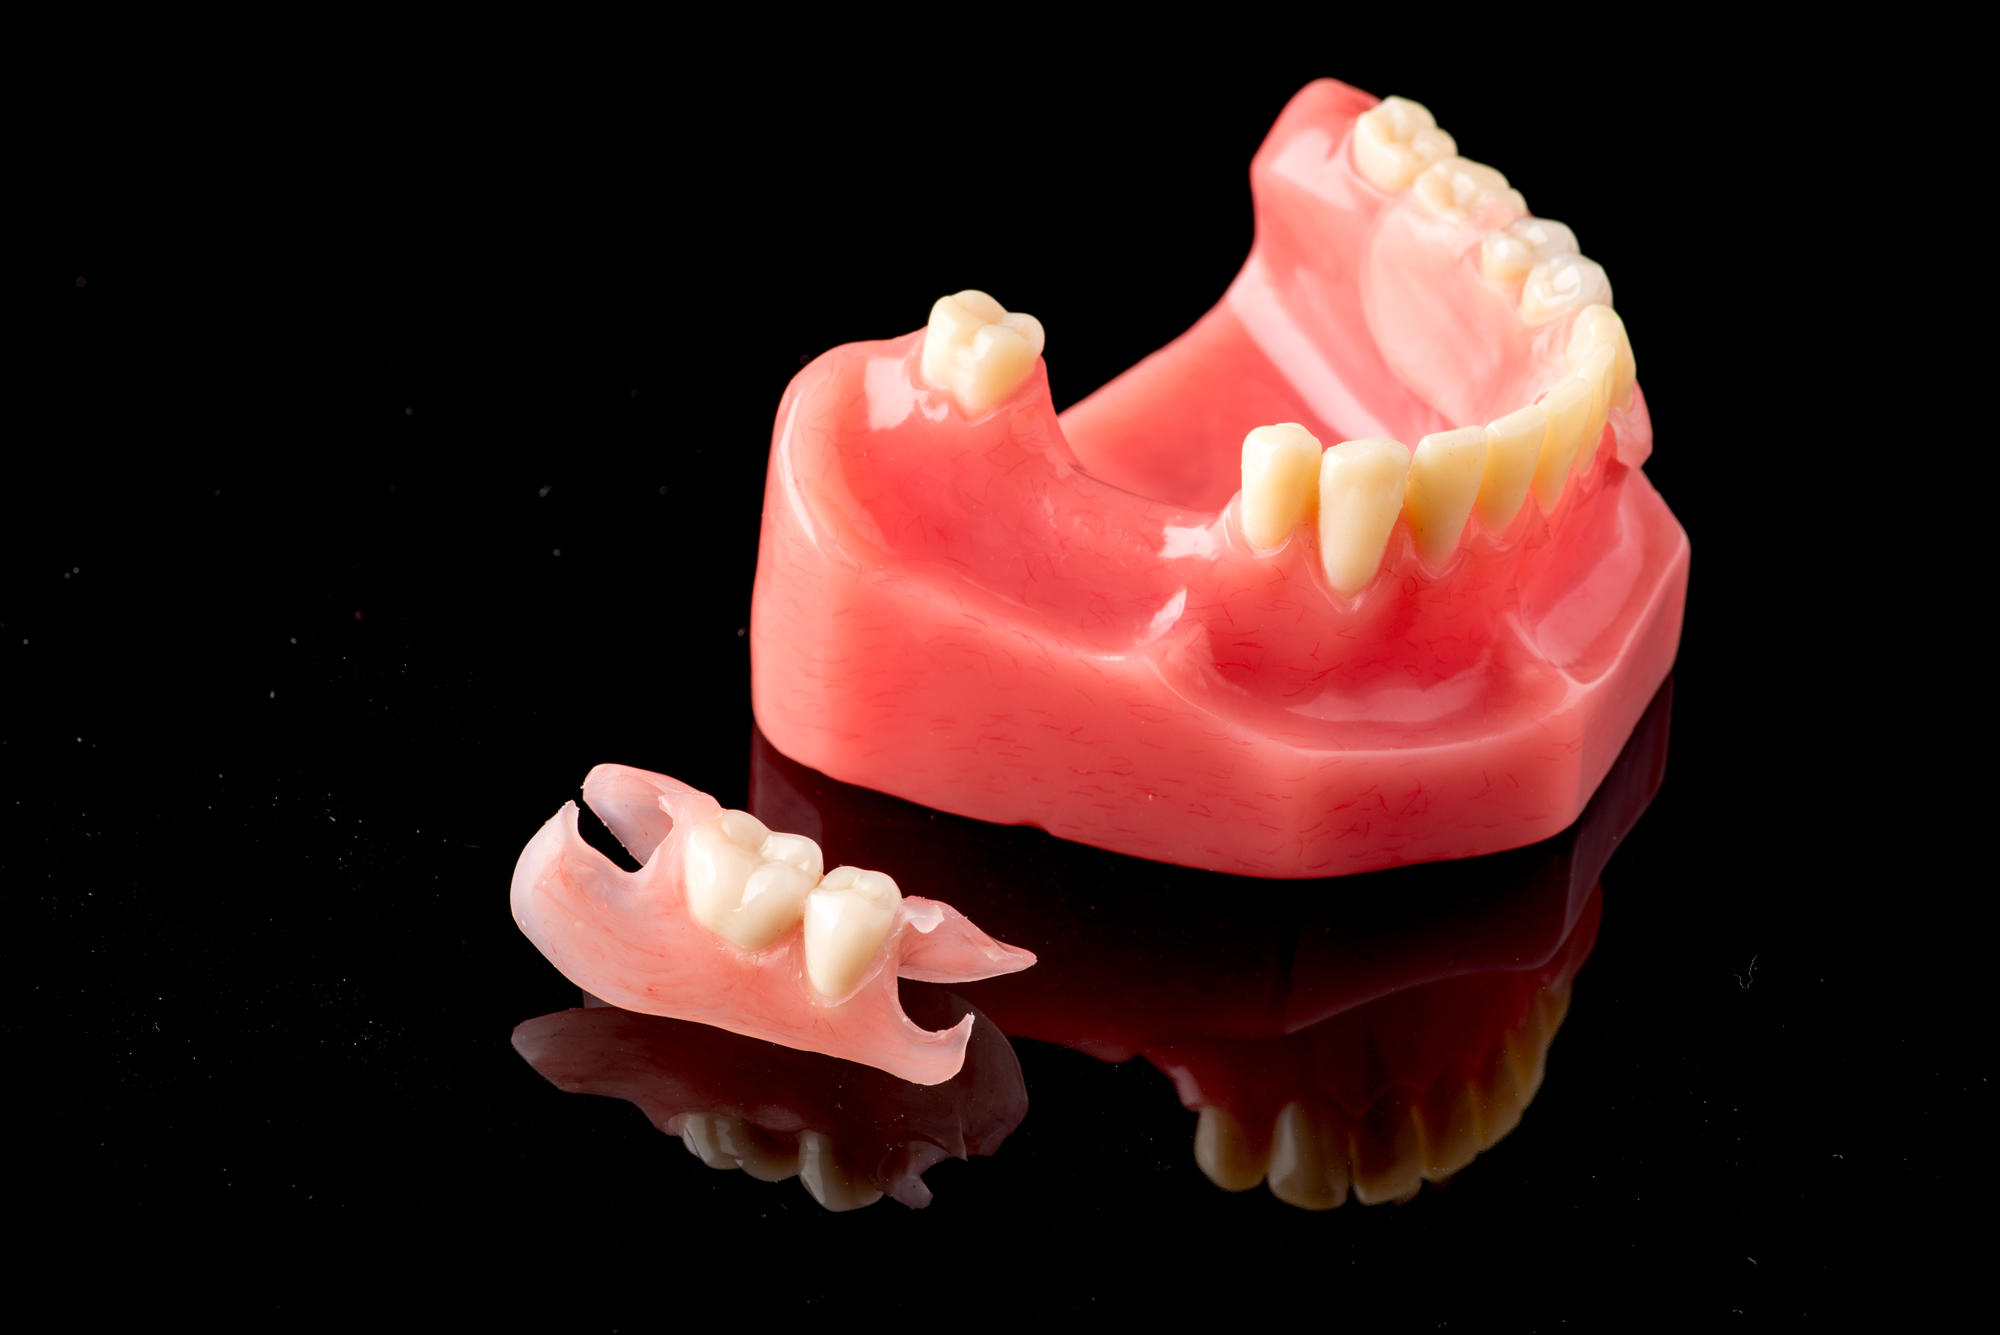 Prothèse dentaire en résine souple